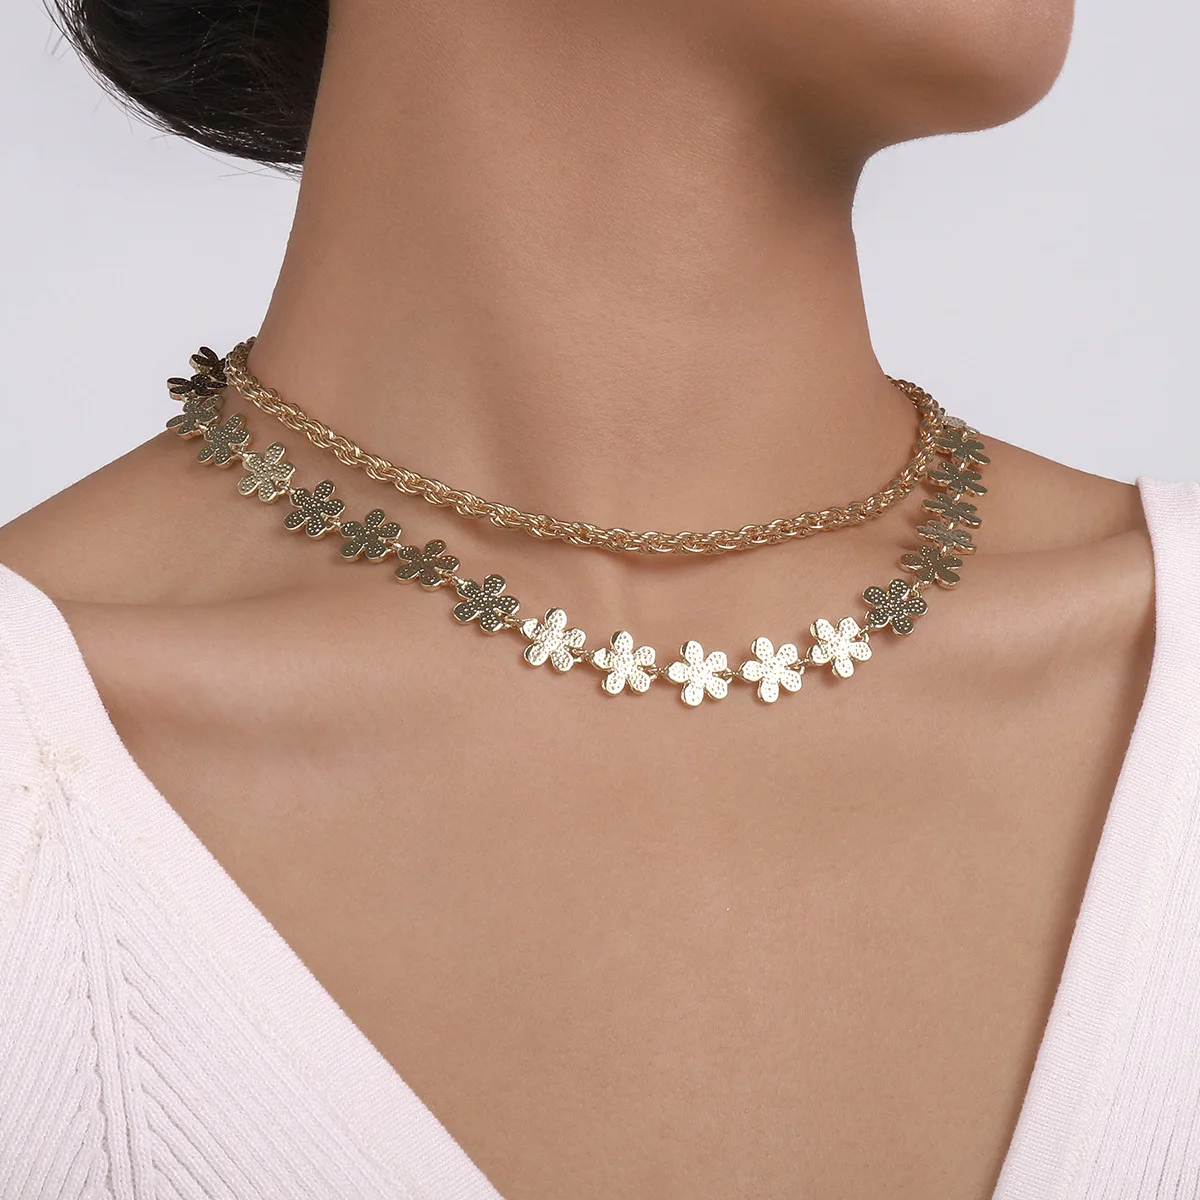 Металлическое простое модное ожерелье, сладкие и прохладные цветы ветра, геометрическое ожерелье внахлестку, романтический темперамент.